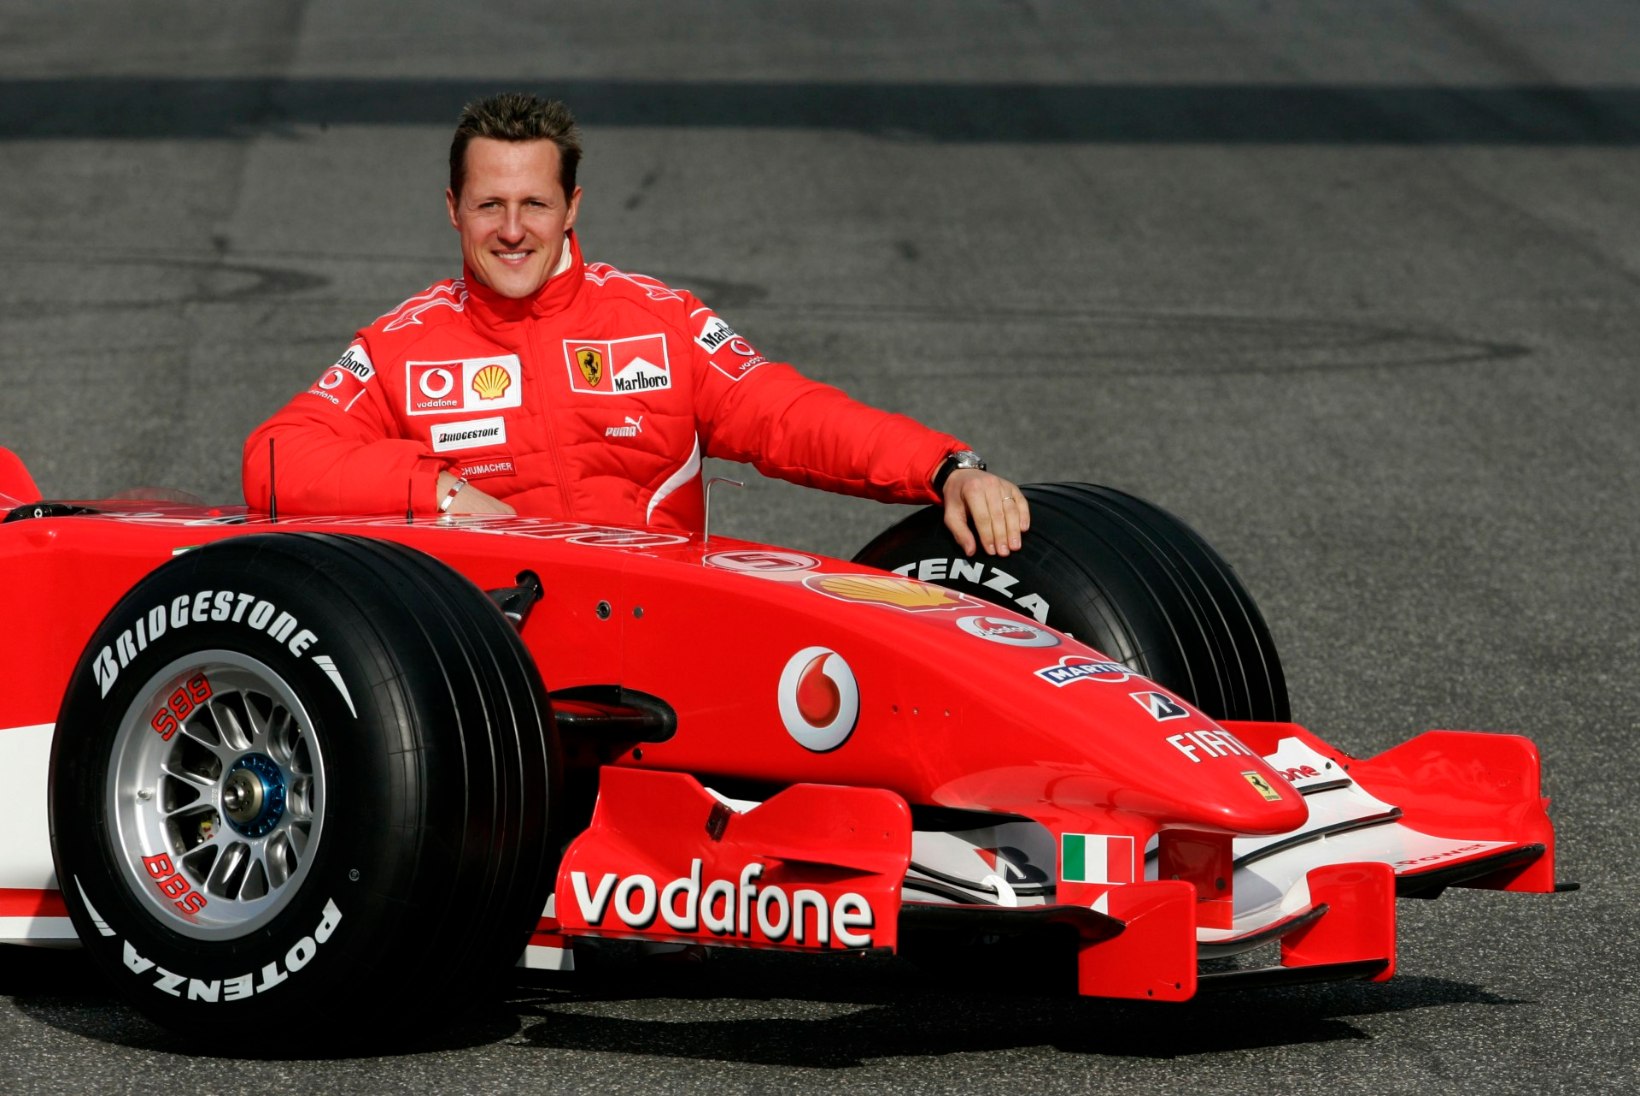 KURB: Michael Schumacheri viimane õlekõrs osutus pettuseks